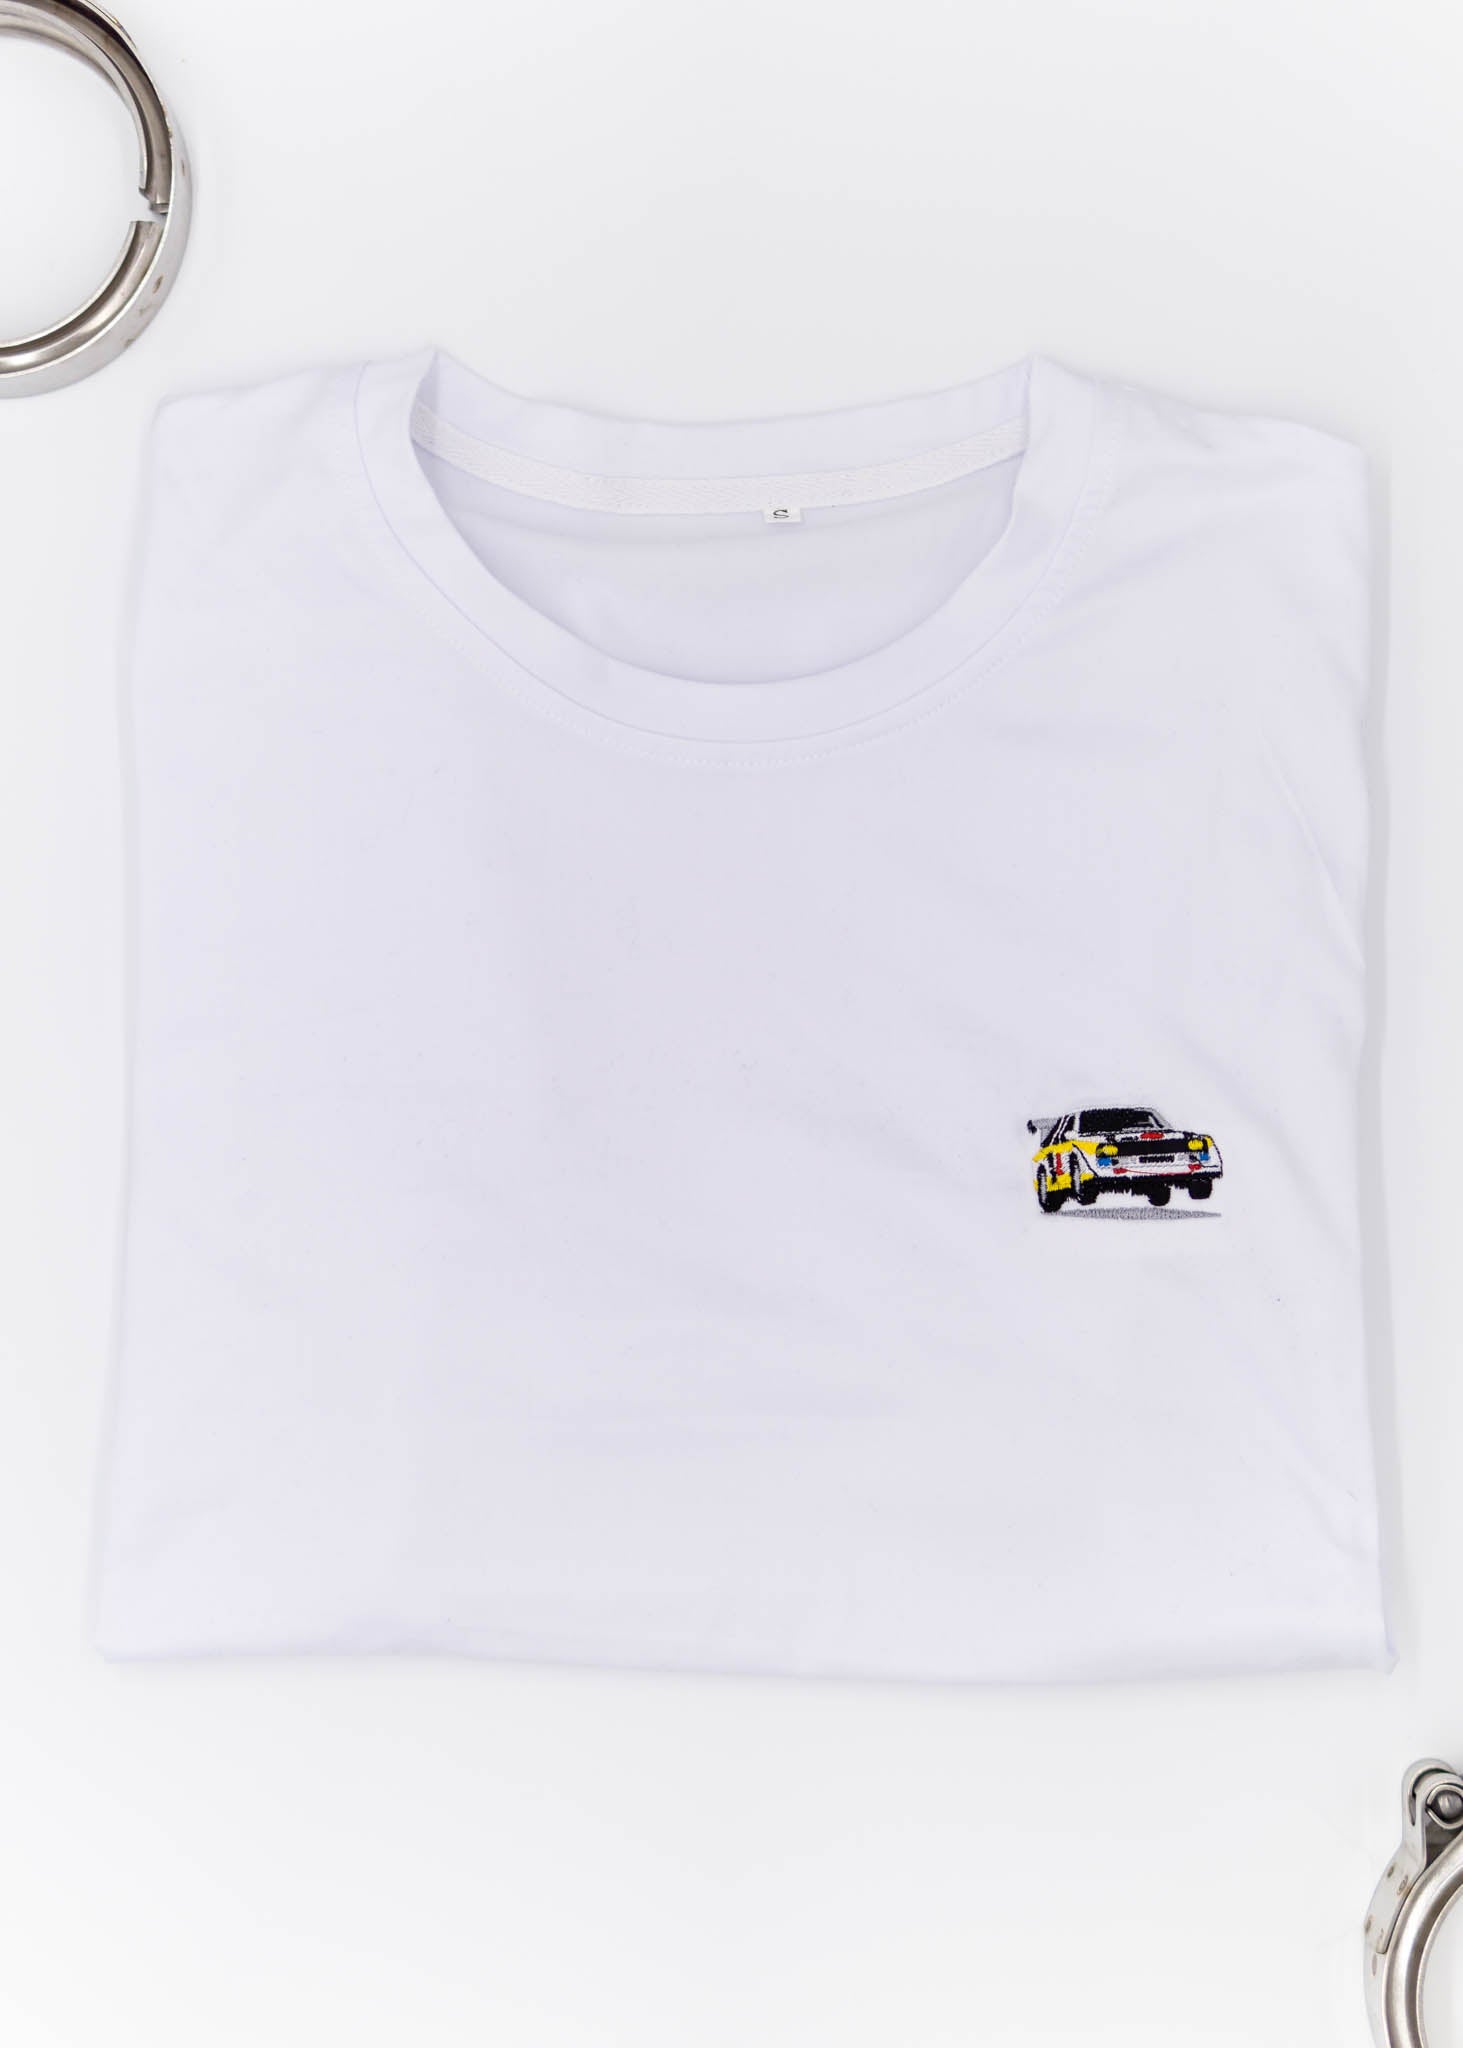 pizzabrand Audi Sport quattro S1 T-Shirt - White